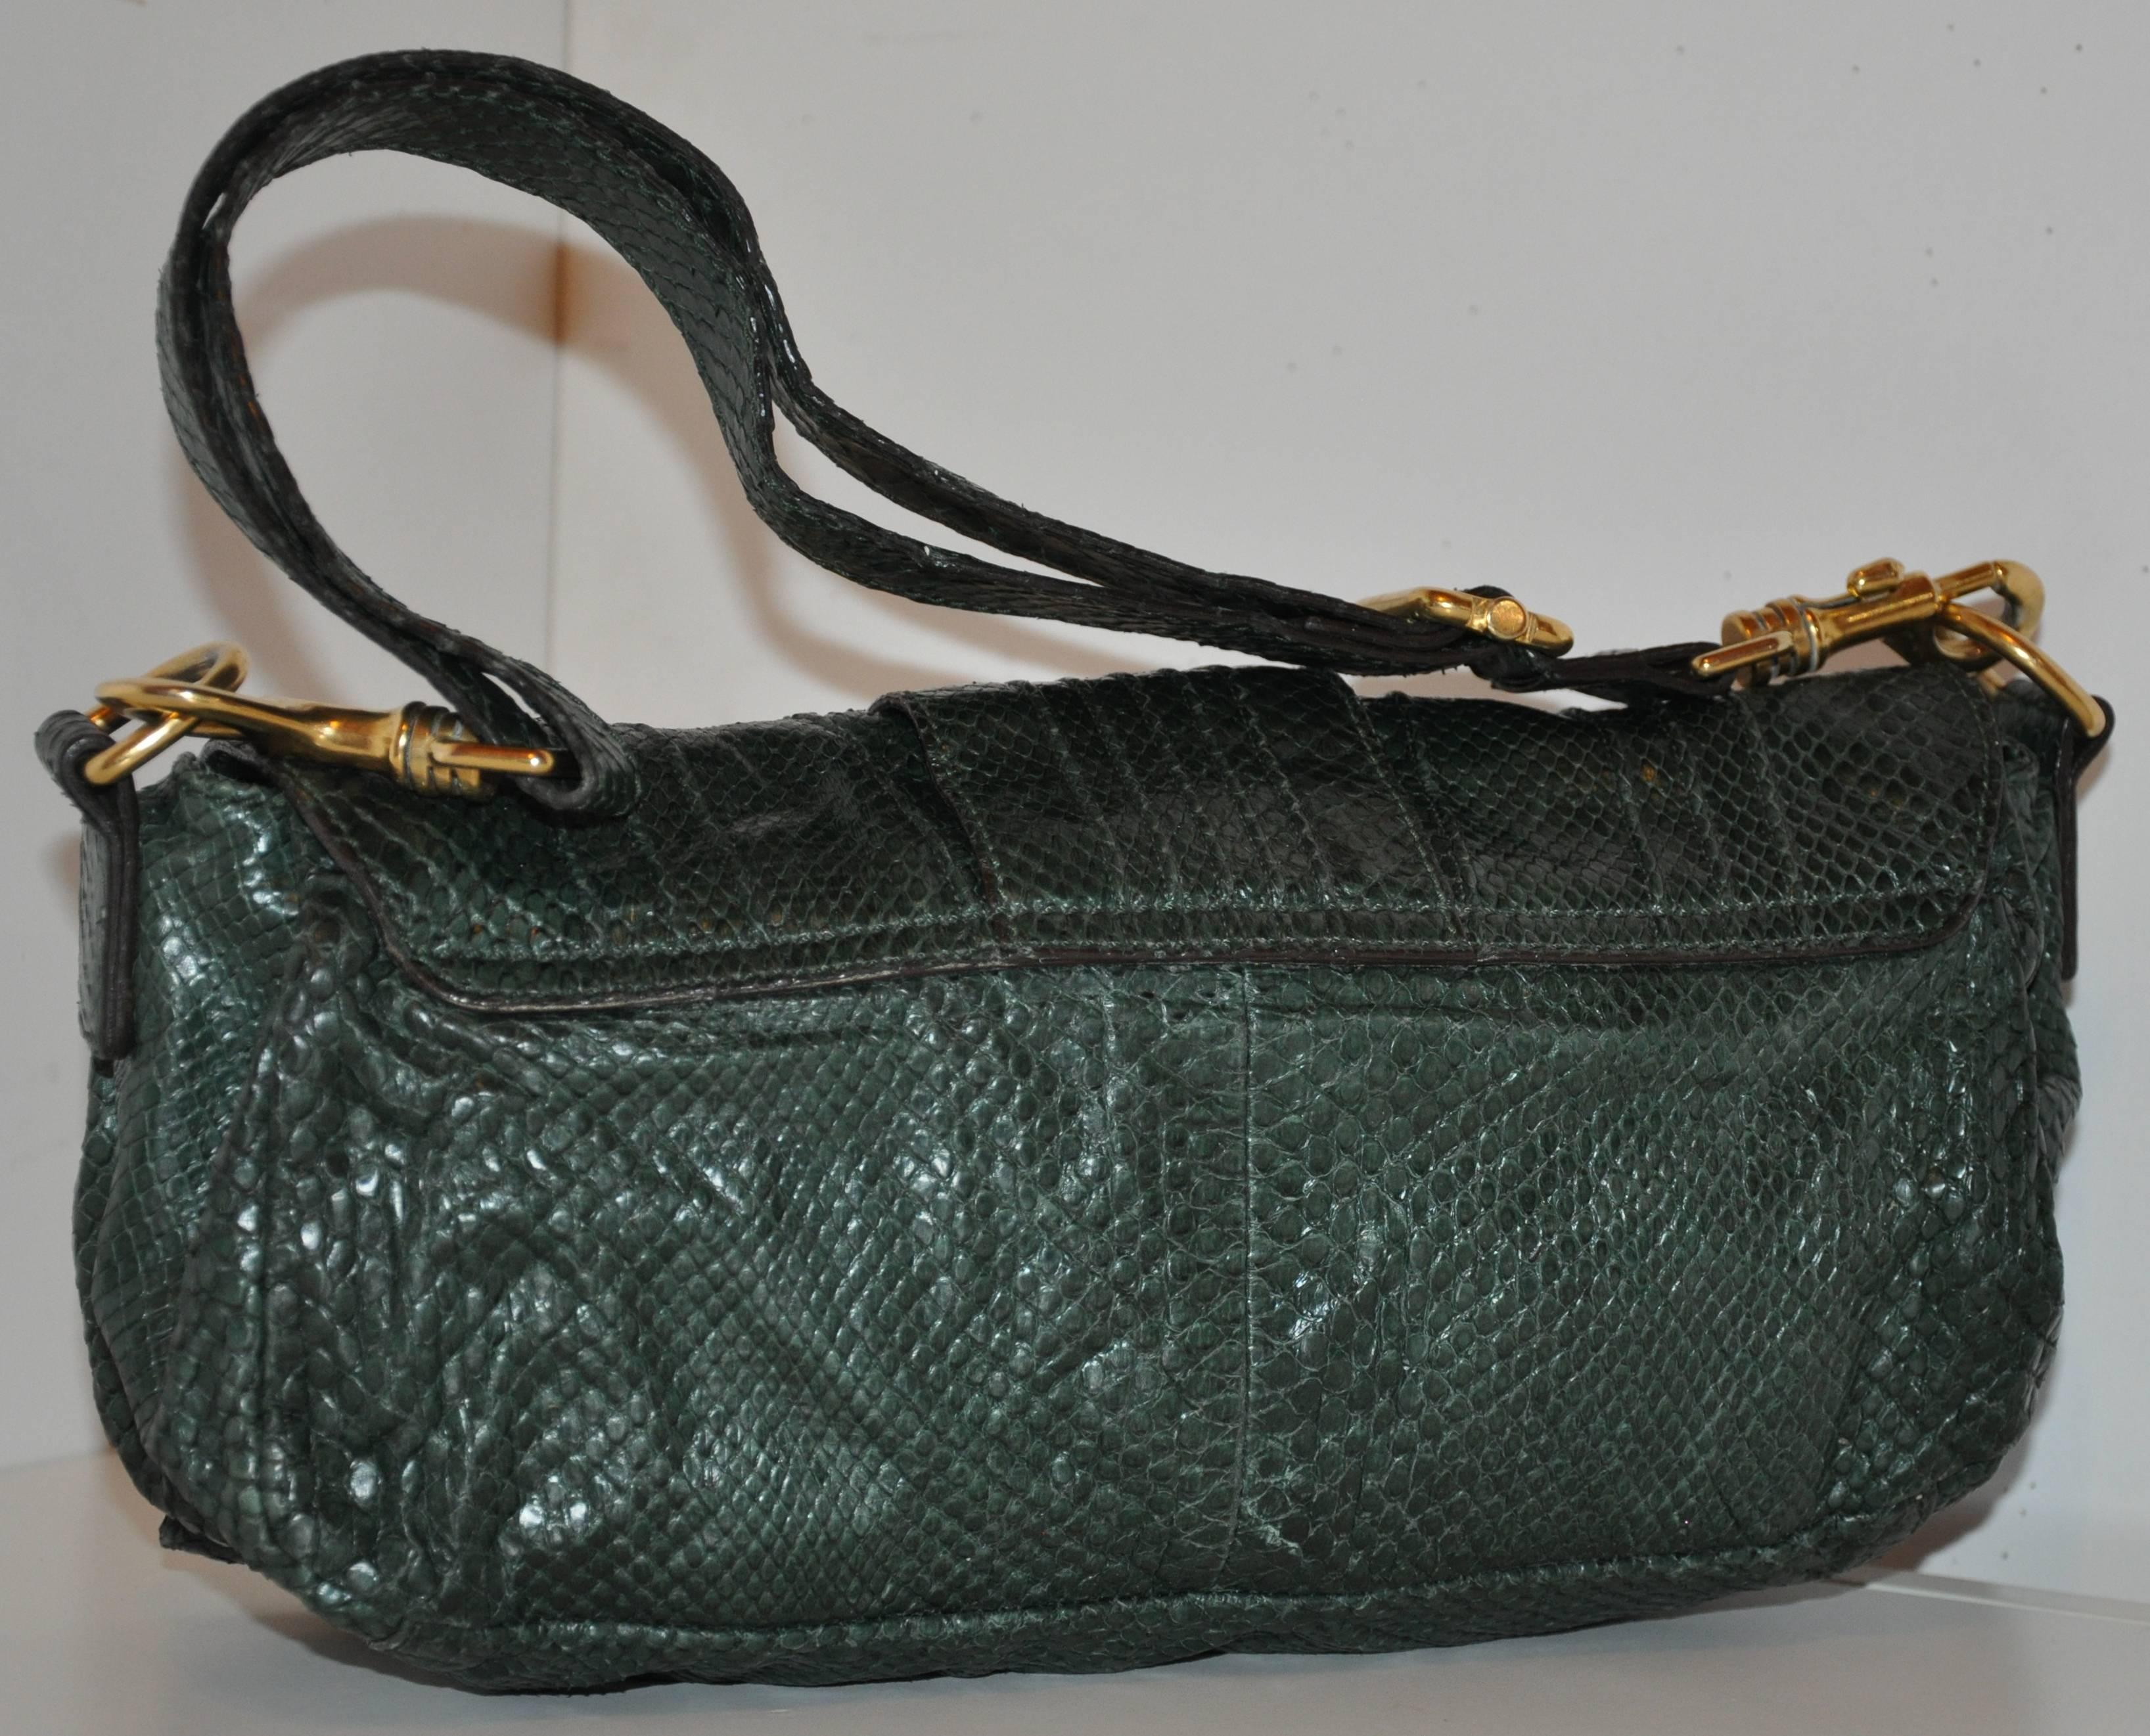           Le sac à bandoulière à rabat en peau de lézard vert forêt d'Escada, merveilleusement détaillé, est doté de bandoulières amovibles pouvant être utilisées comme pochette. Les bretelles sont réglables et mesurent 1 1/8